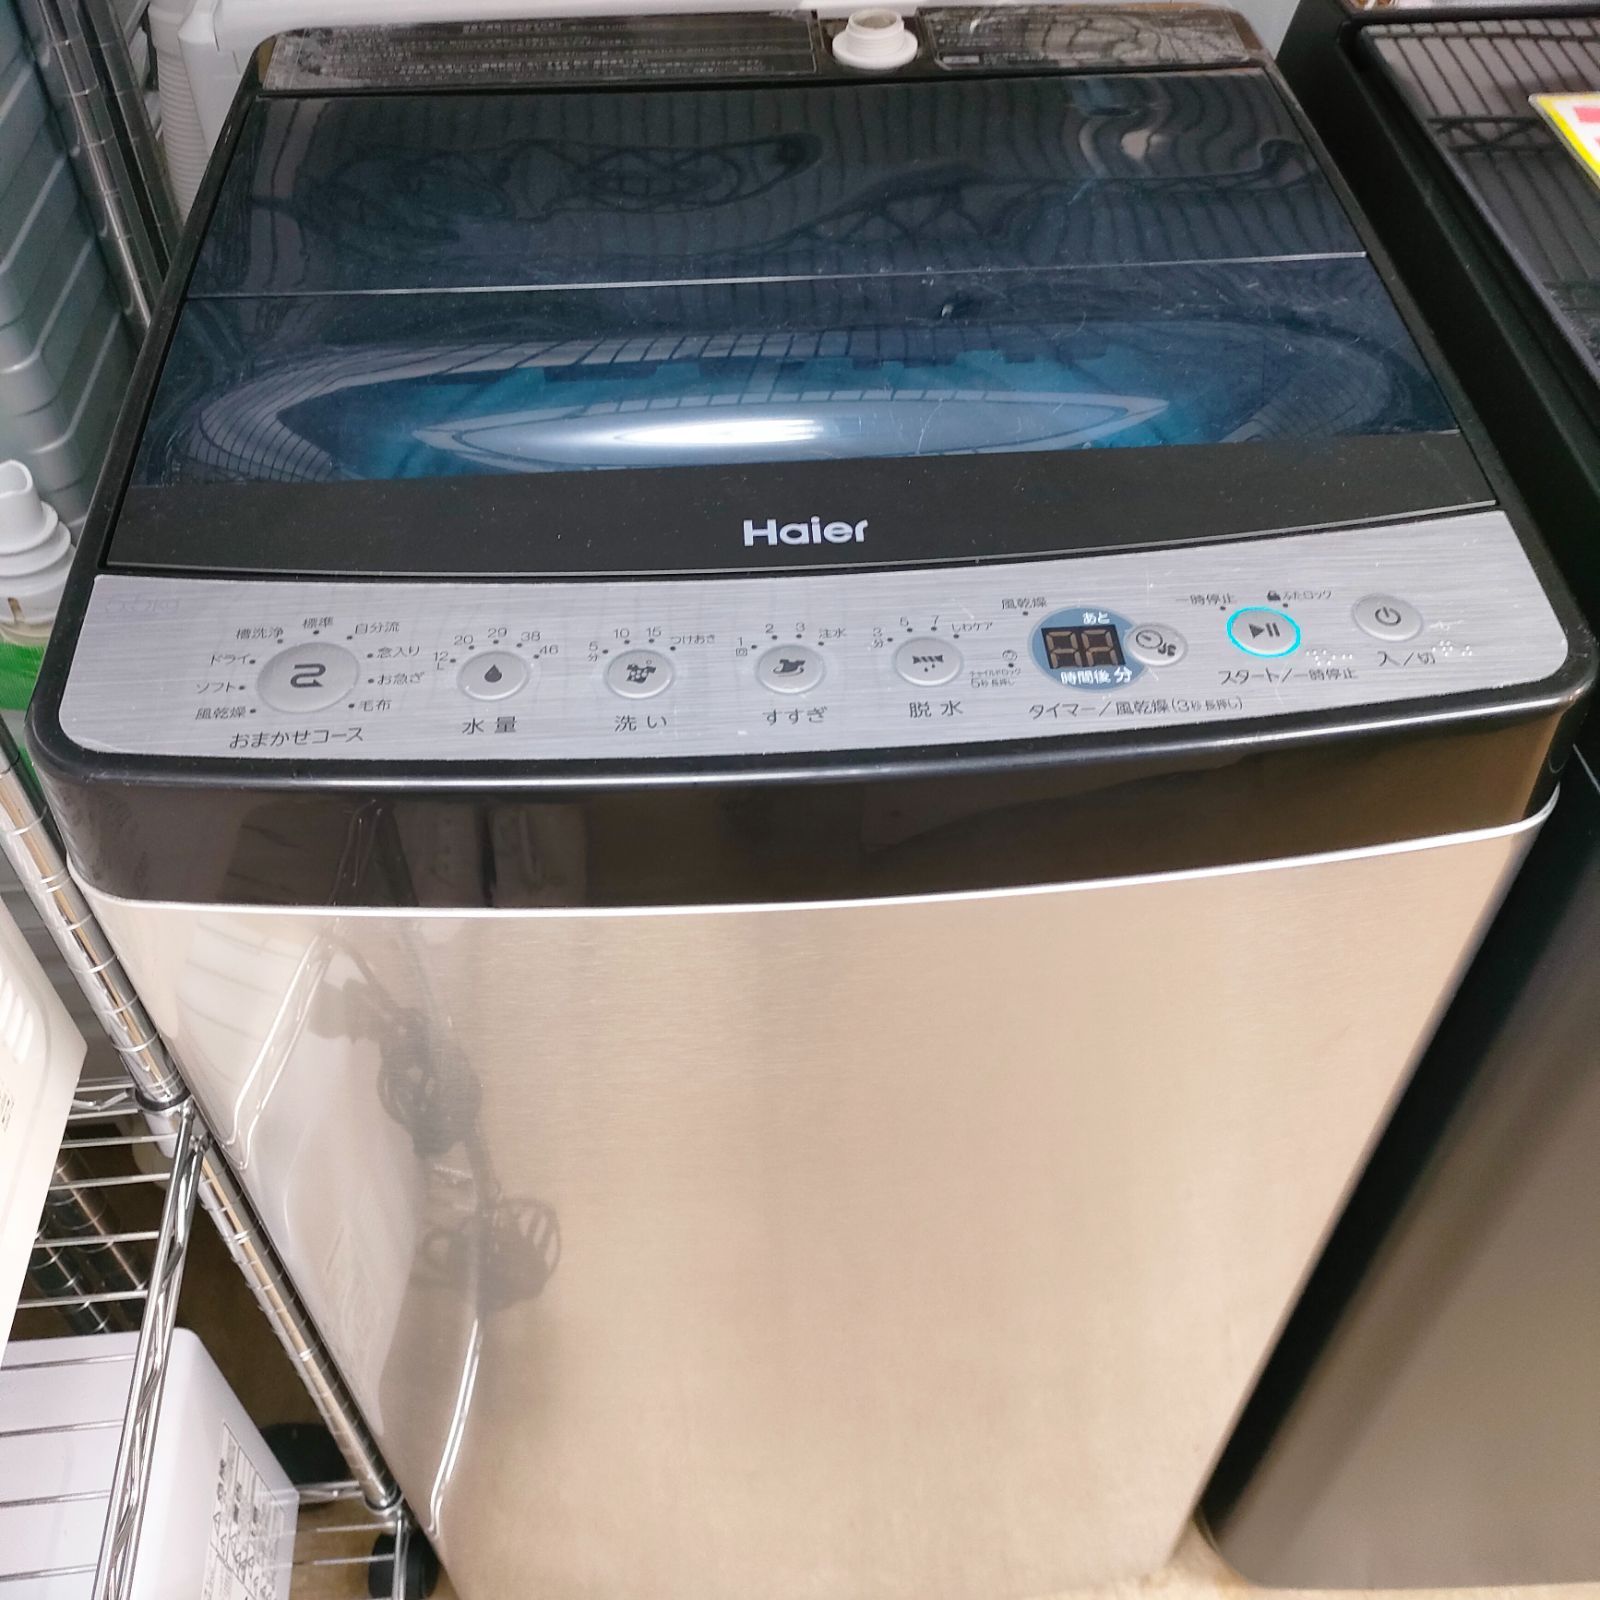 ハイアール Haier 洗濯機 JW-XP2C55F-XK 説明書付き - 生活家電